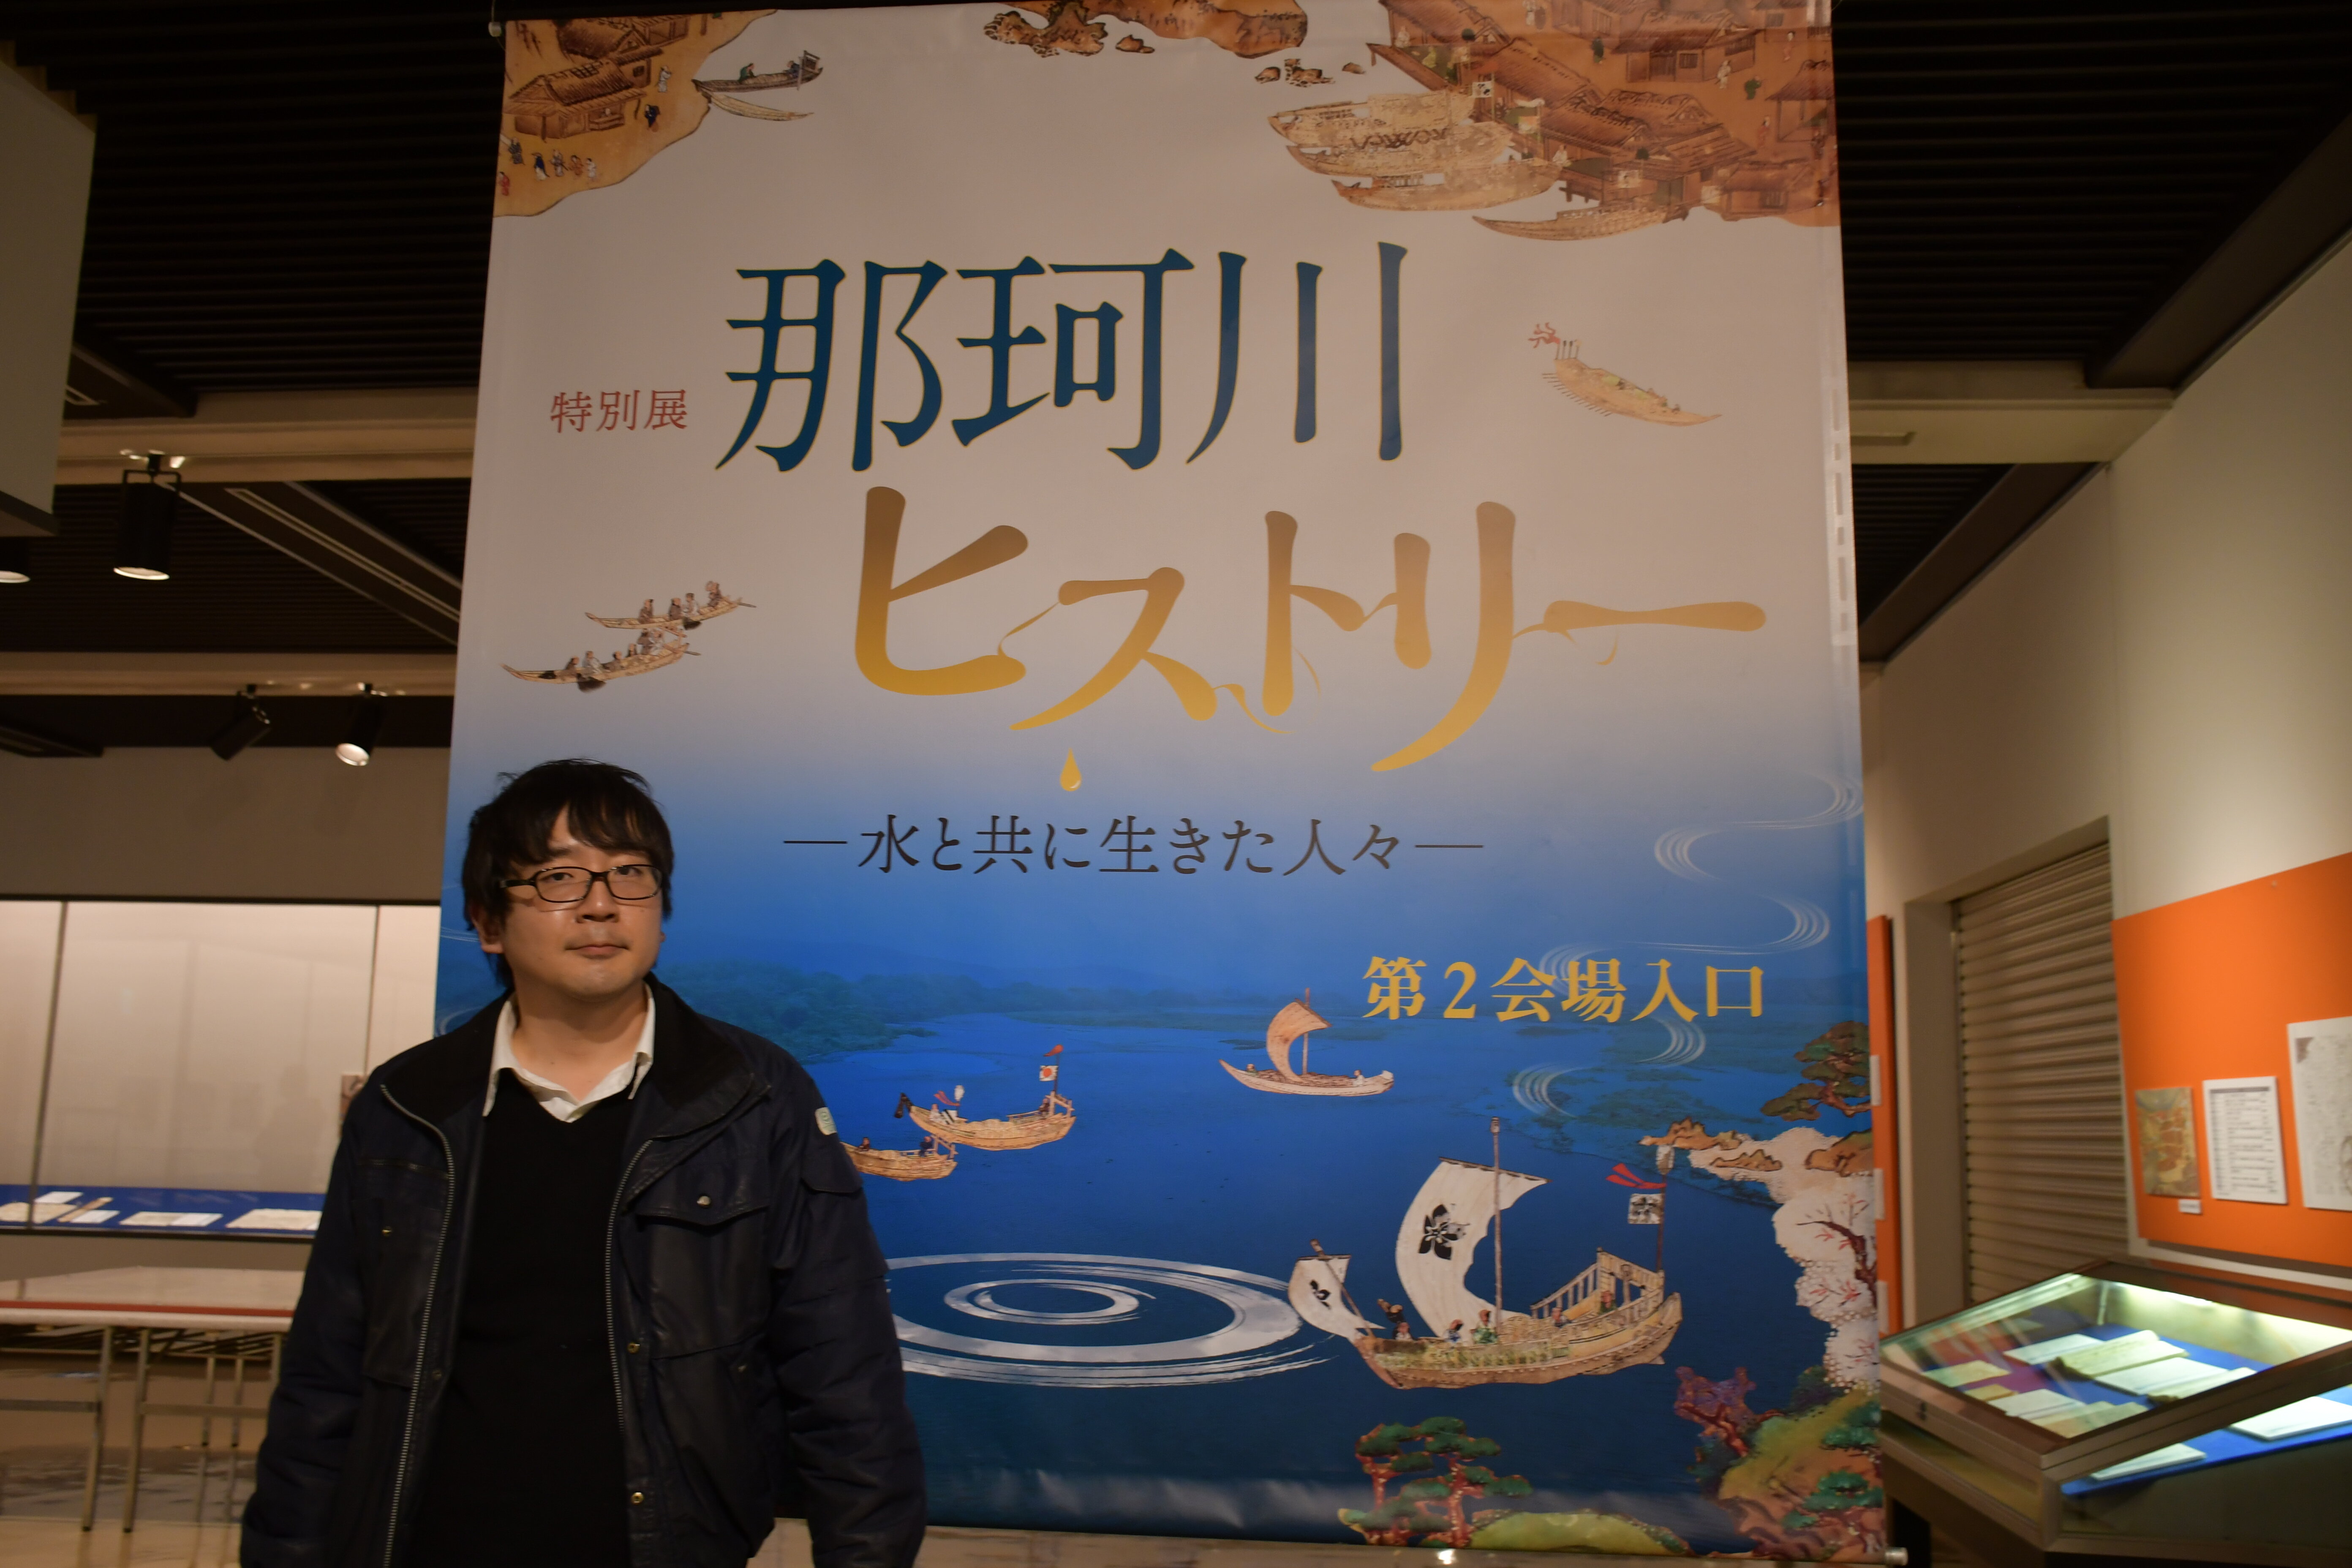 茨大で歴史学を学んだ学芸員が企画した「那珂川ヒストリー」展＠水戸市立博物館 <br>―2019年台風災害のレスキュー史料の初公開も